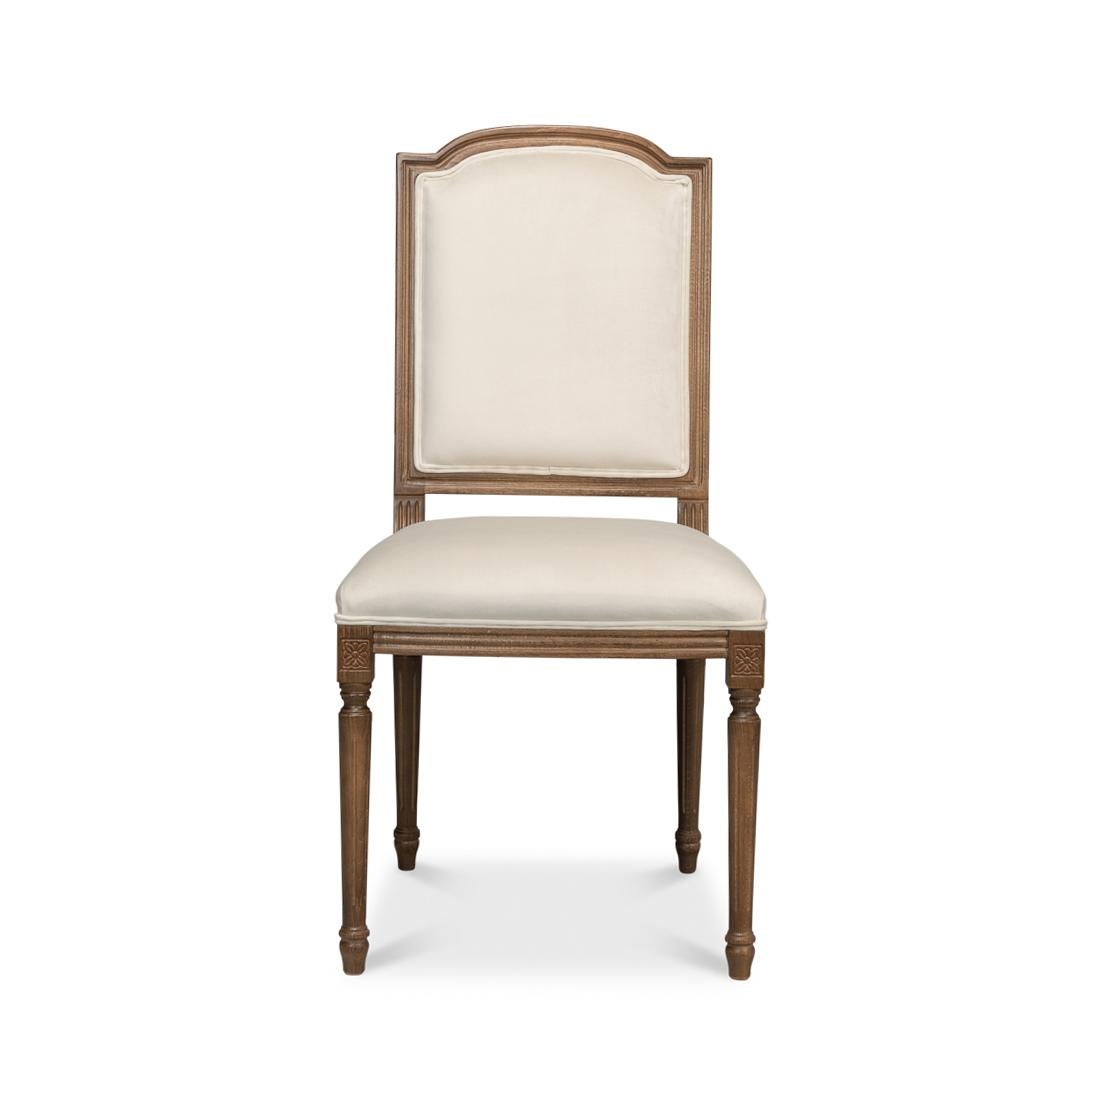 Dieser edle Stuhl ist eine echte Anspielung auf das klassische französische Provincial-Design. Er wurde mit viel Liebe zum Detail gefertigt und bringt einen Hauch von Eleganz in Ihr Esszimmer. Das elegante Holzgestell ist in einem warmen Farbton